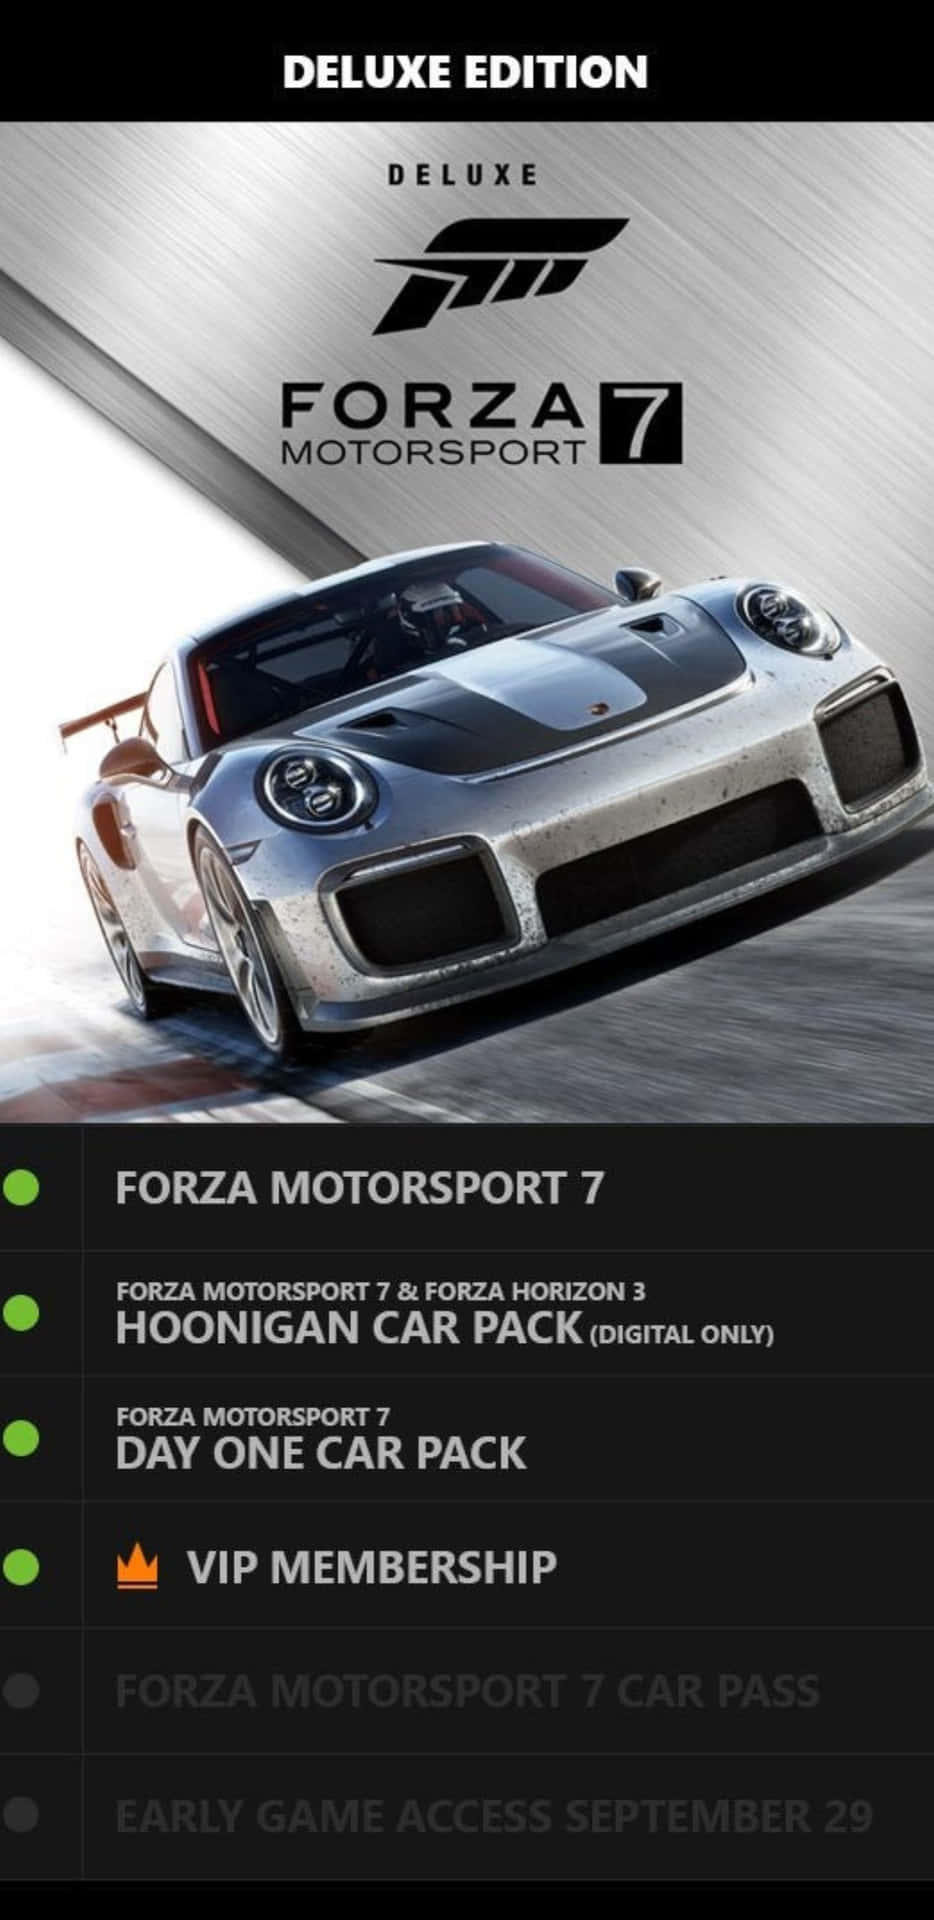 Edicióndeluxe De Forza Motorsport 7